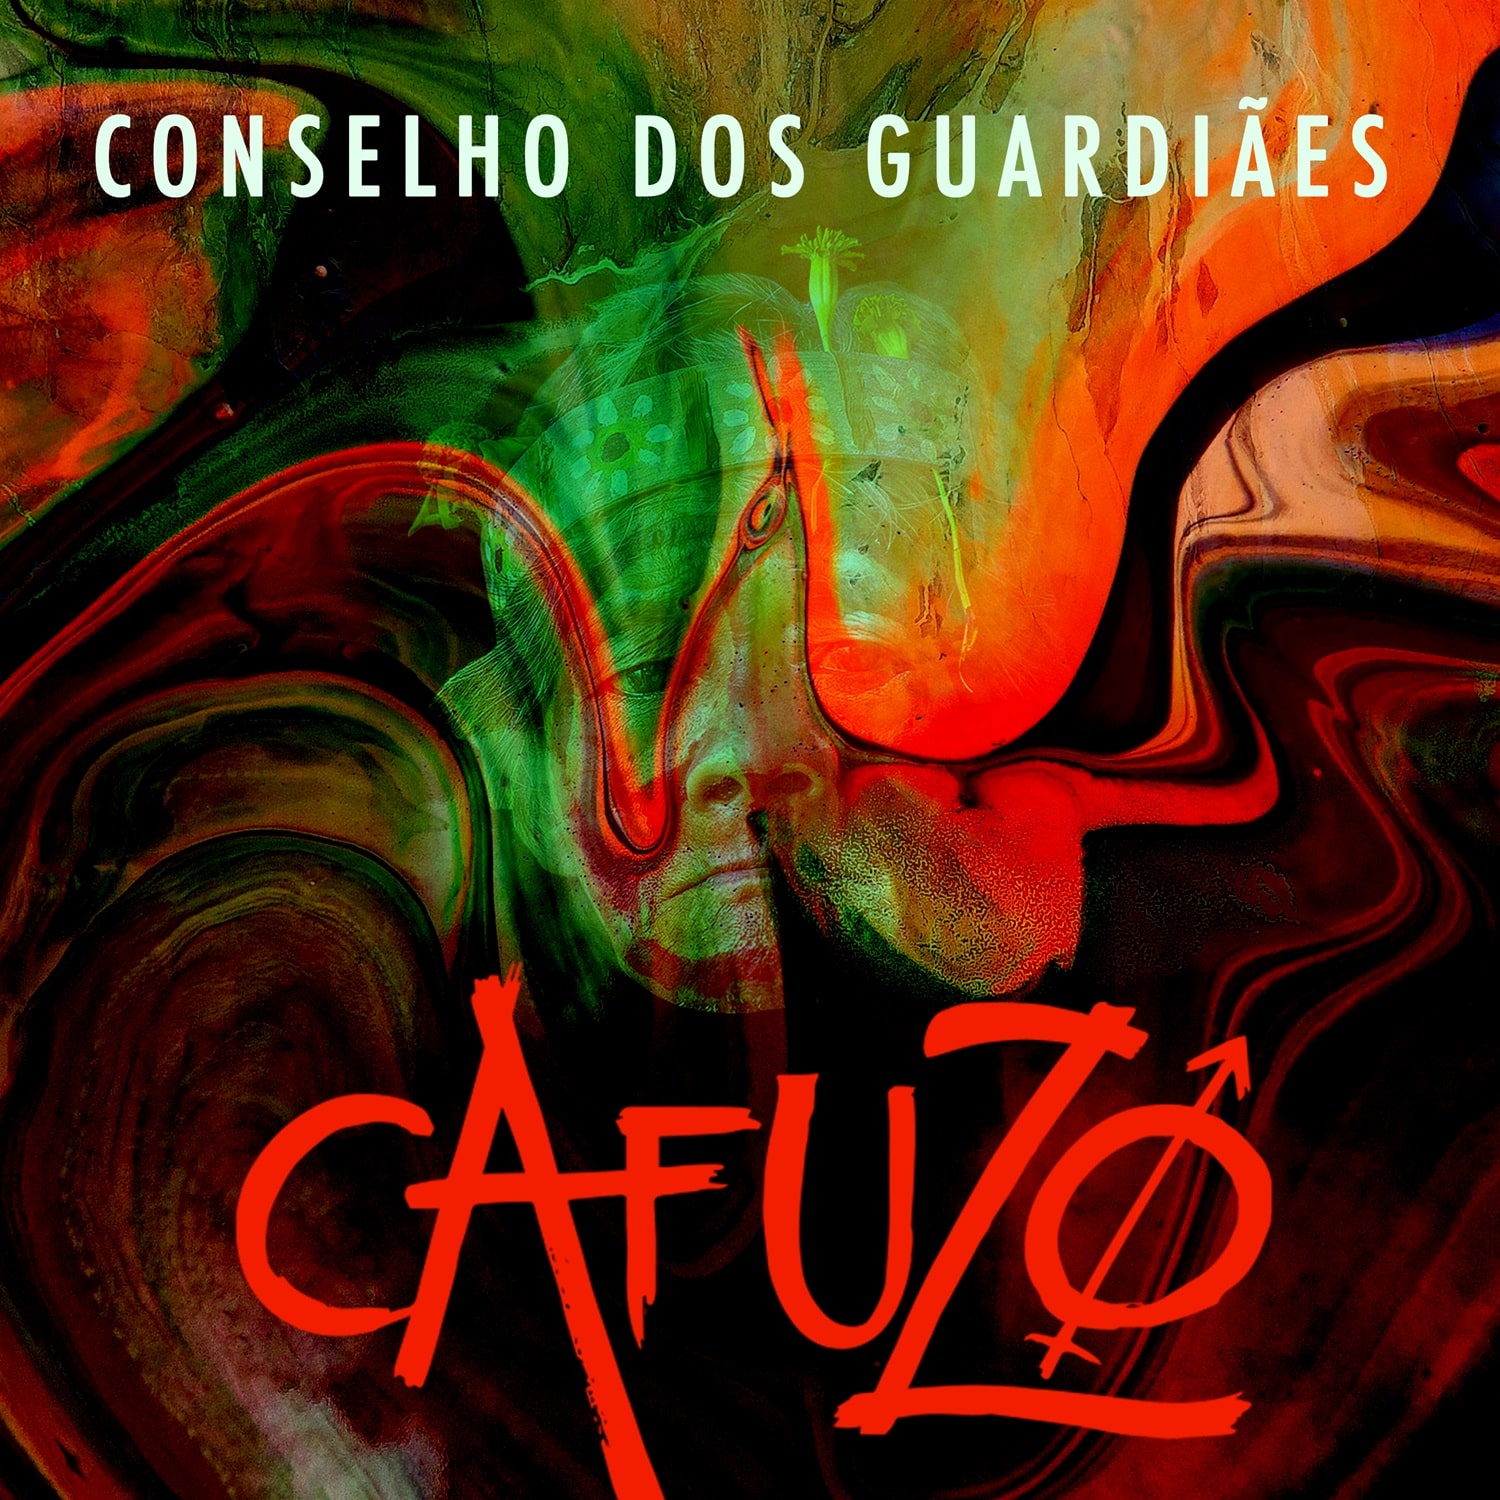 revistaprosaversoearte.com - CAFUZØ faz jornada sensorial no álbum 'Conselho dos Guardiães'